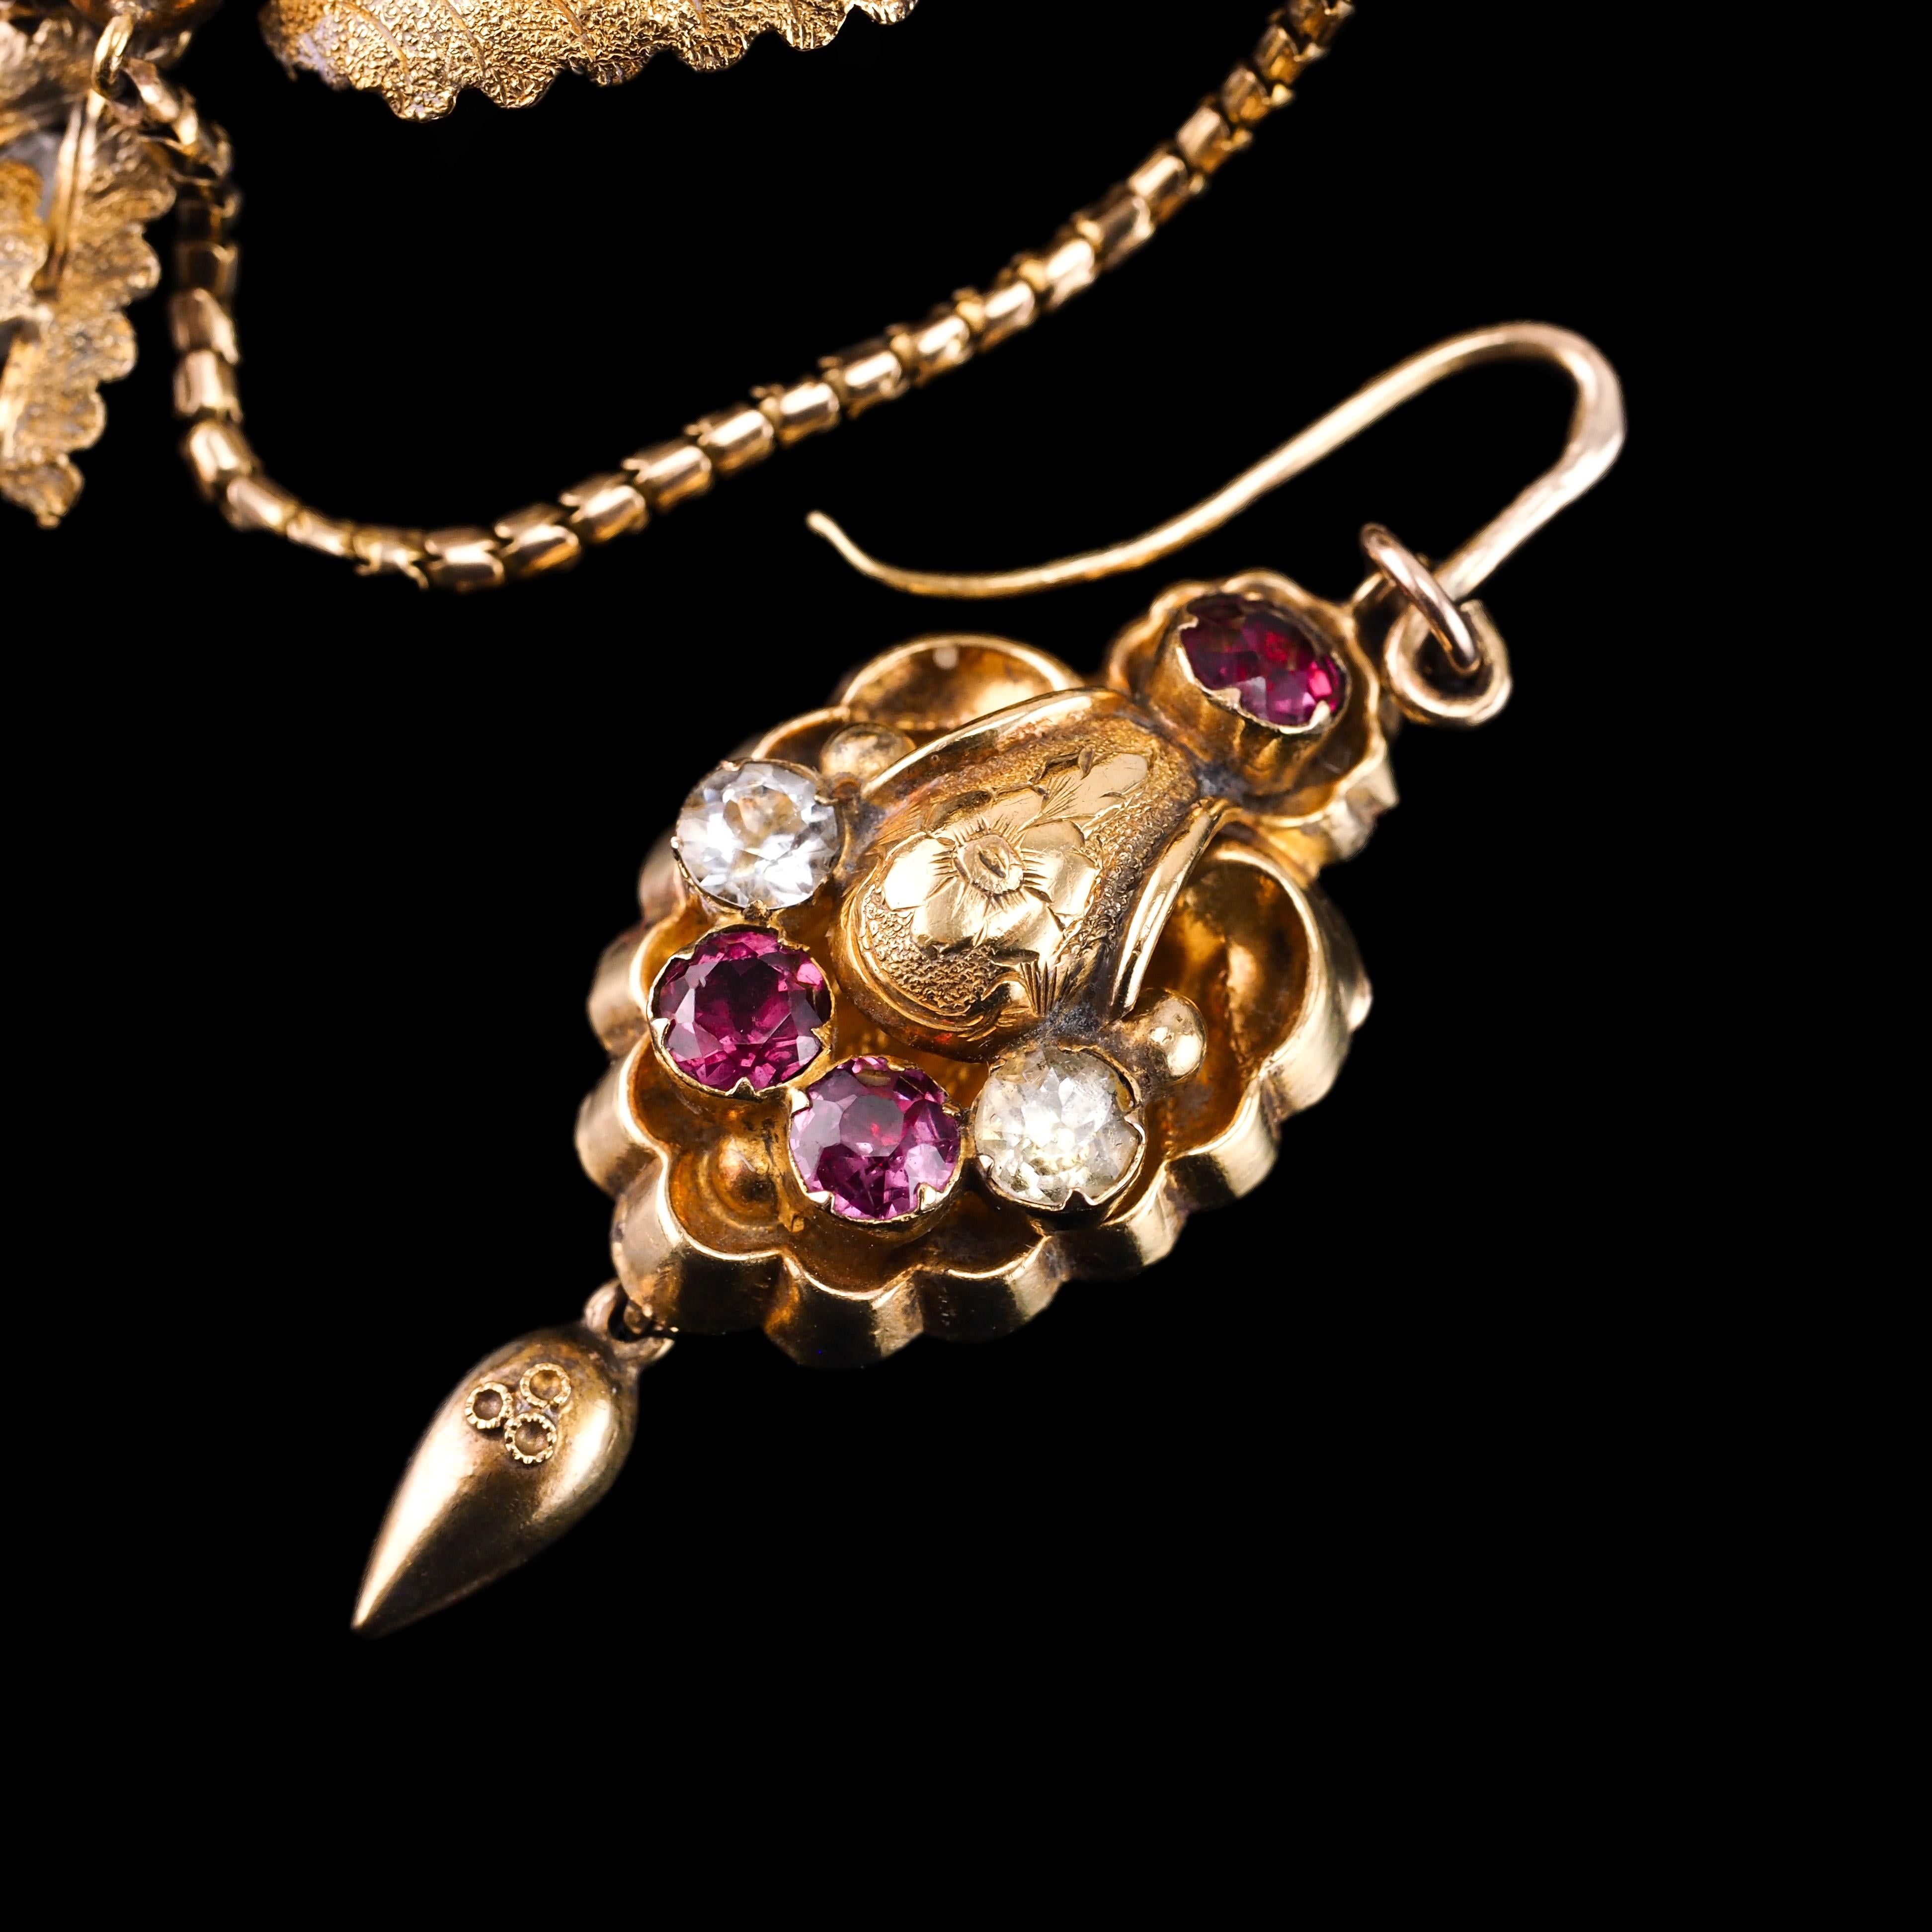 Antique 18K Gold Brooch Pendant & Earrings Garnet & Chrysoberyl - c.1870 For Sale 11